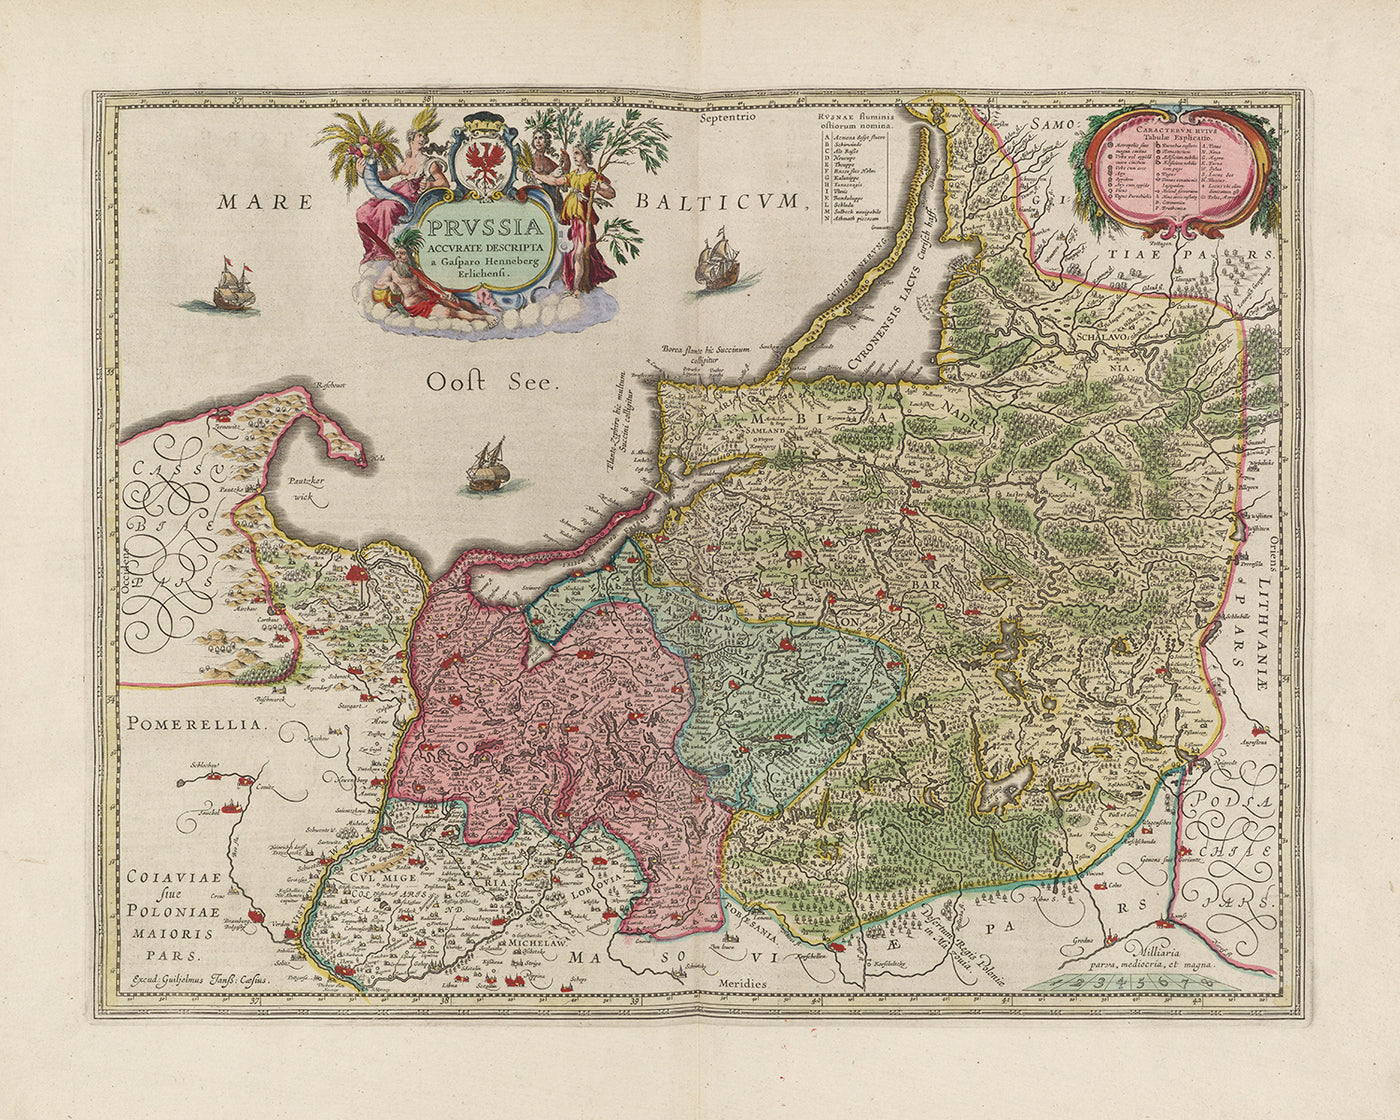 Alte Karte der Woiwodschaft Ermland-Masuren von Joan Blaeu, 1665: Olsztyn, Elbląg, Ełk, Ostroda und Giżycko, mit Masurischen Seen, Biskupiec und Łyna